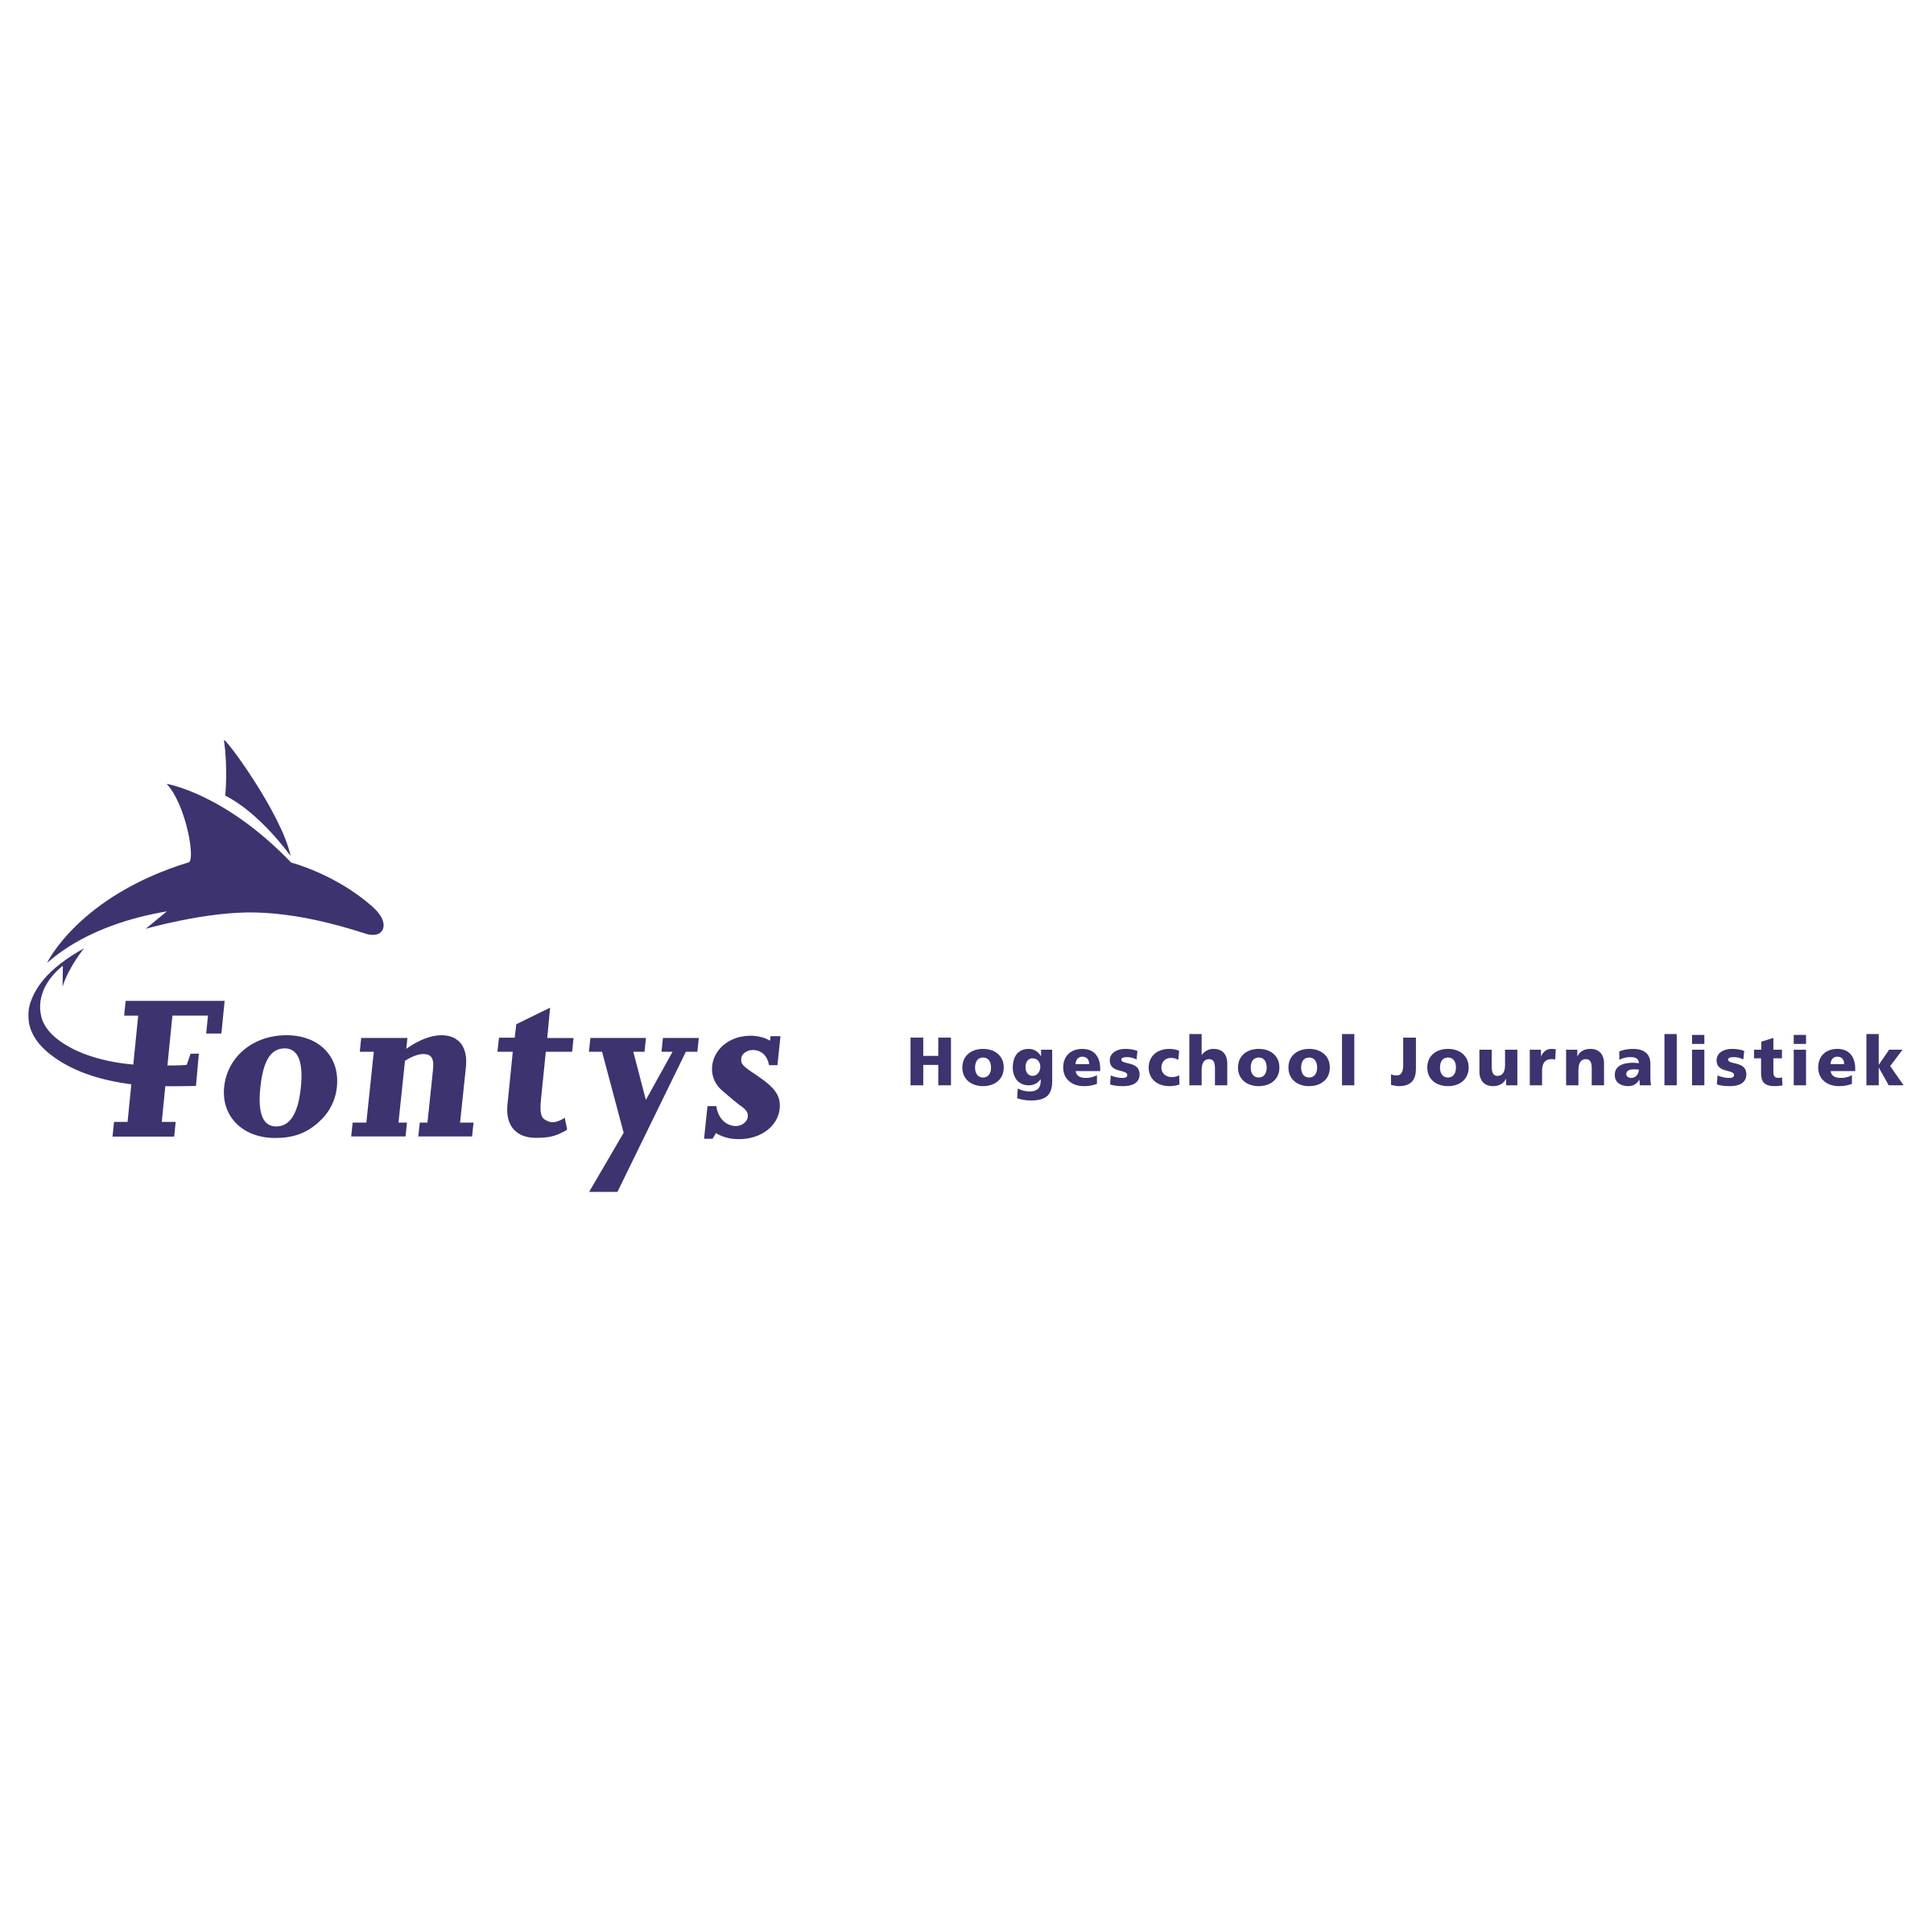 fontys-hogeschool-journalistiek-logo-png-transparent